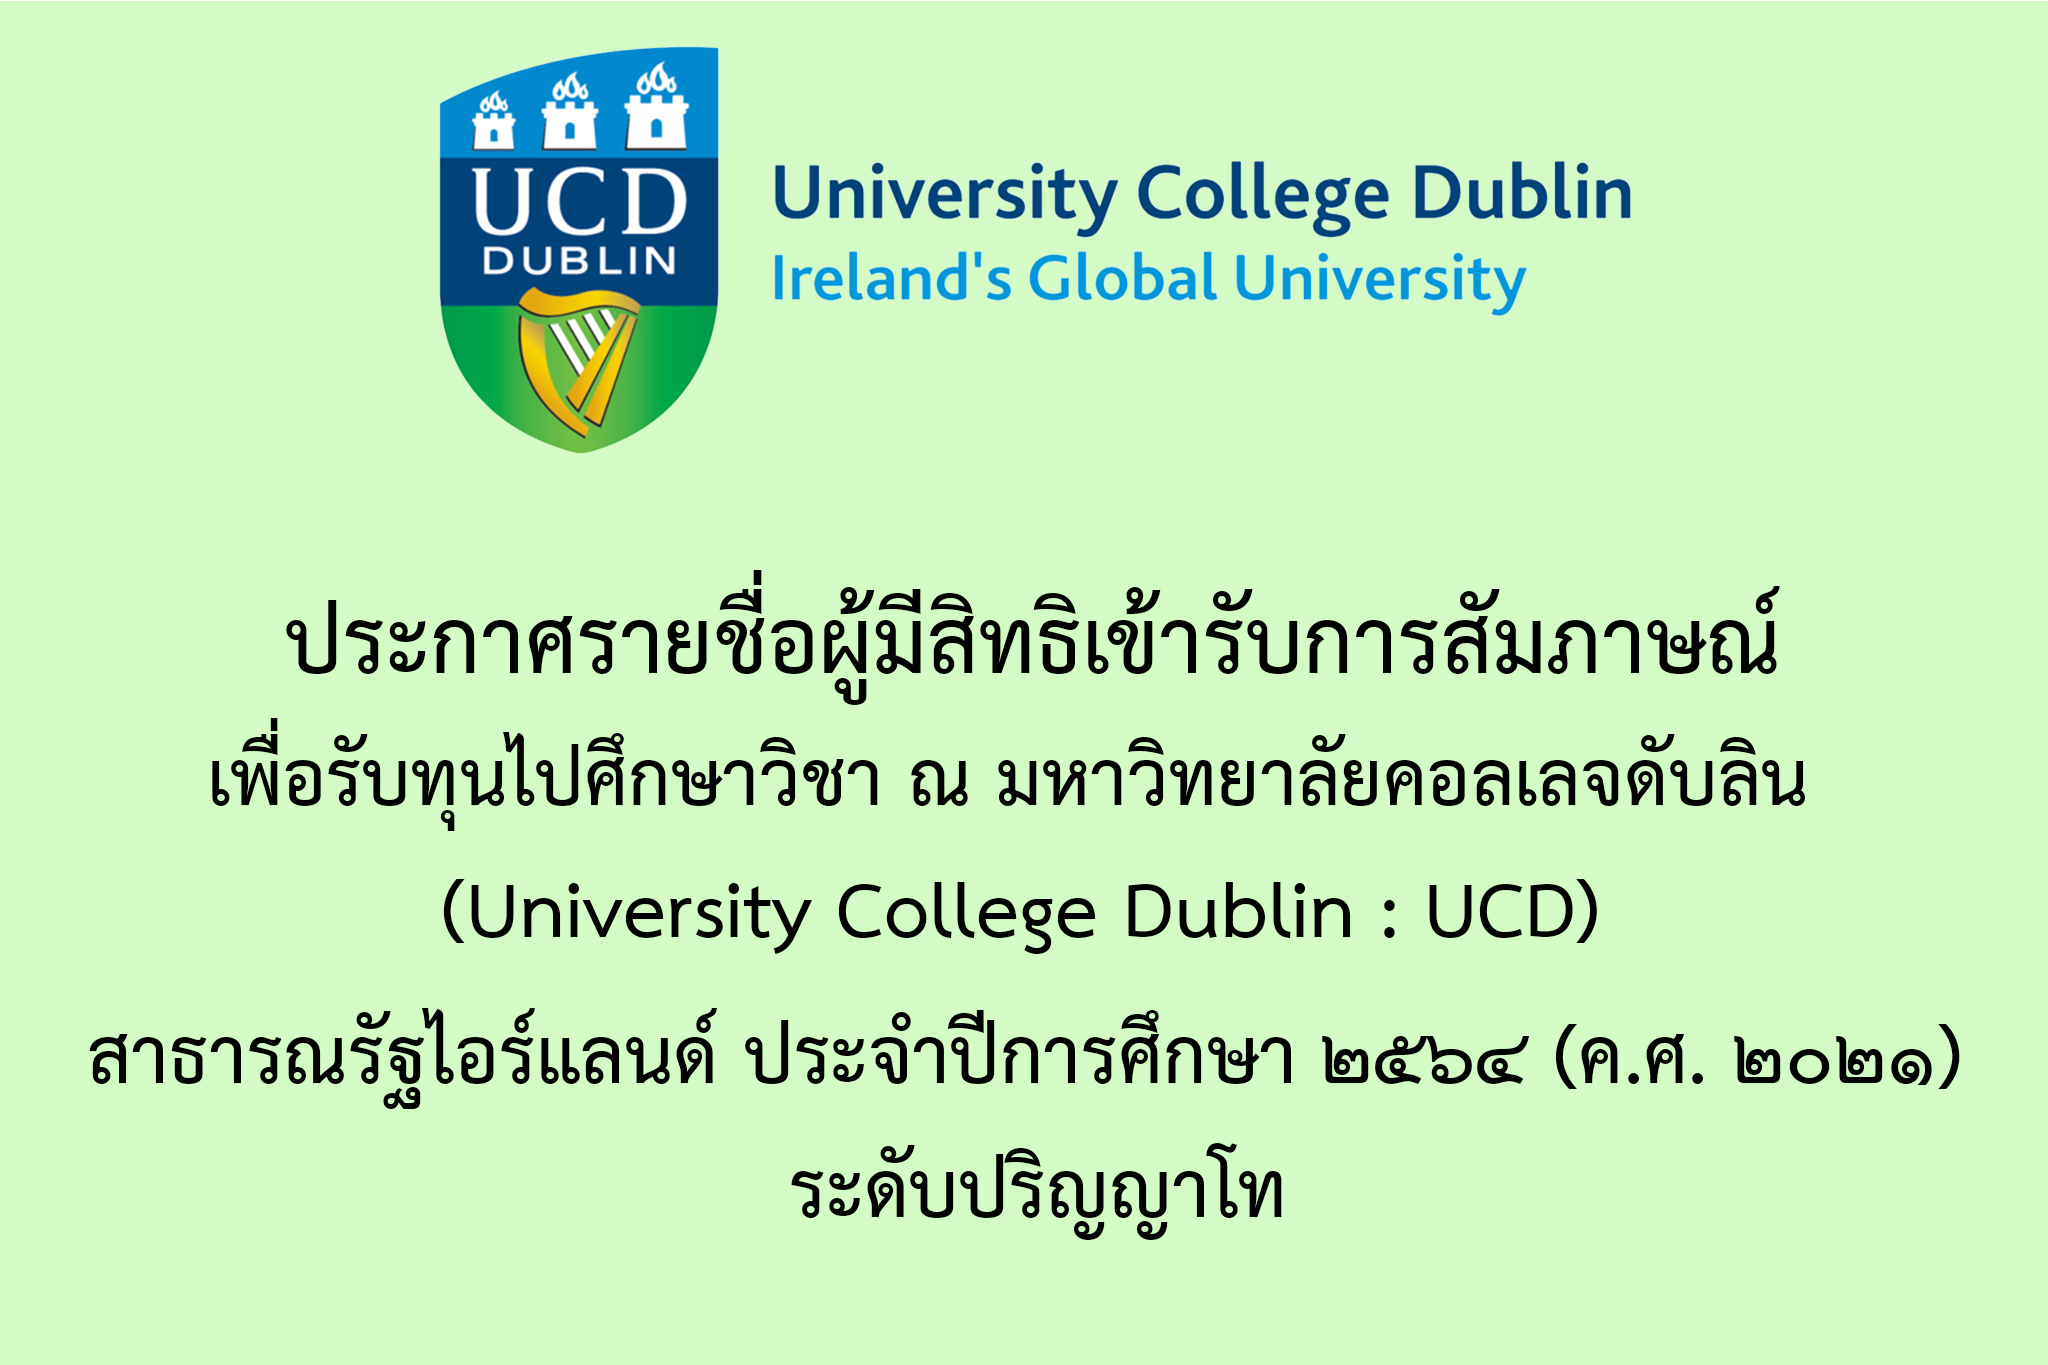 ประกาศรายชื่อผู้มีสิทธิเข้ารับการสัมภาษณ์เพื่อรับทุนการศึกษาไปศึกษาวิชา ณ มหาวิทยาลัยคอลเลจดับลิน (University College Dublin : UCD) สาธารณรัฐไอร์แลนด์ ประจำปีการศึกษา ๒๕๖๕ (ค.ศ. ๒๐๒๒)  ระดับปริญญาโท